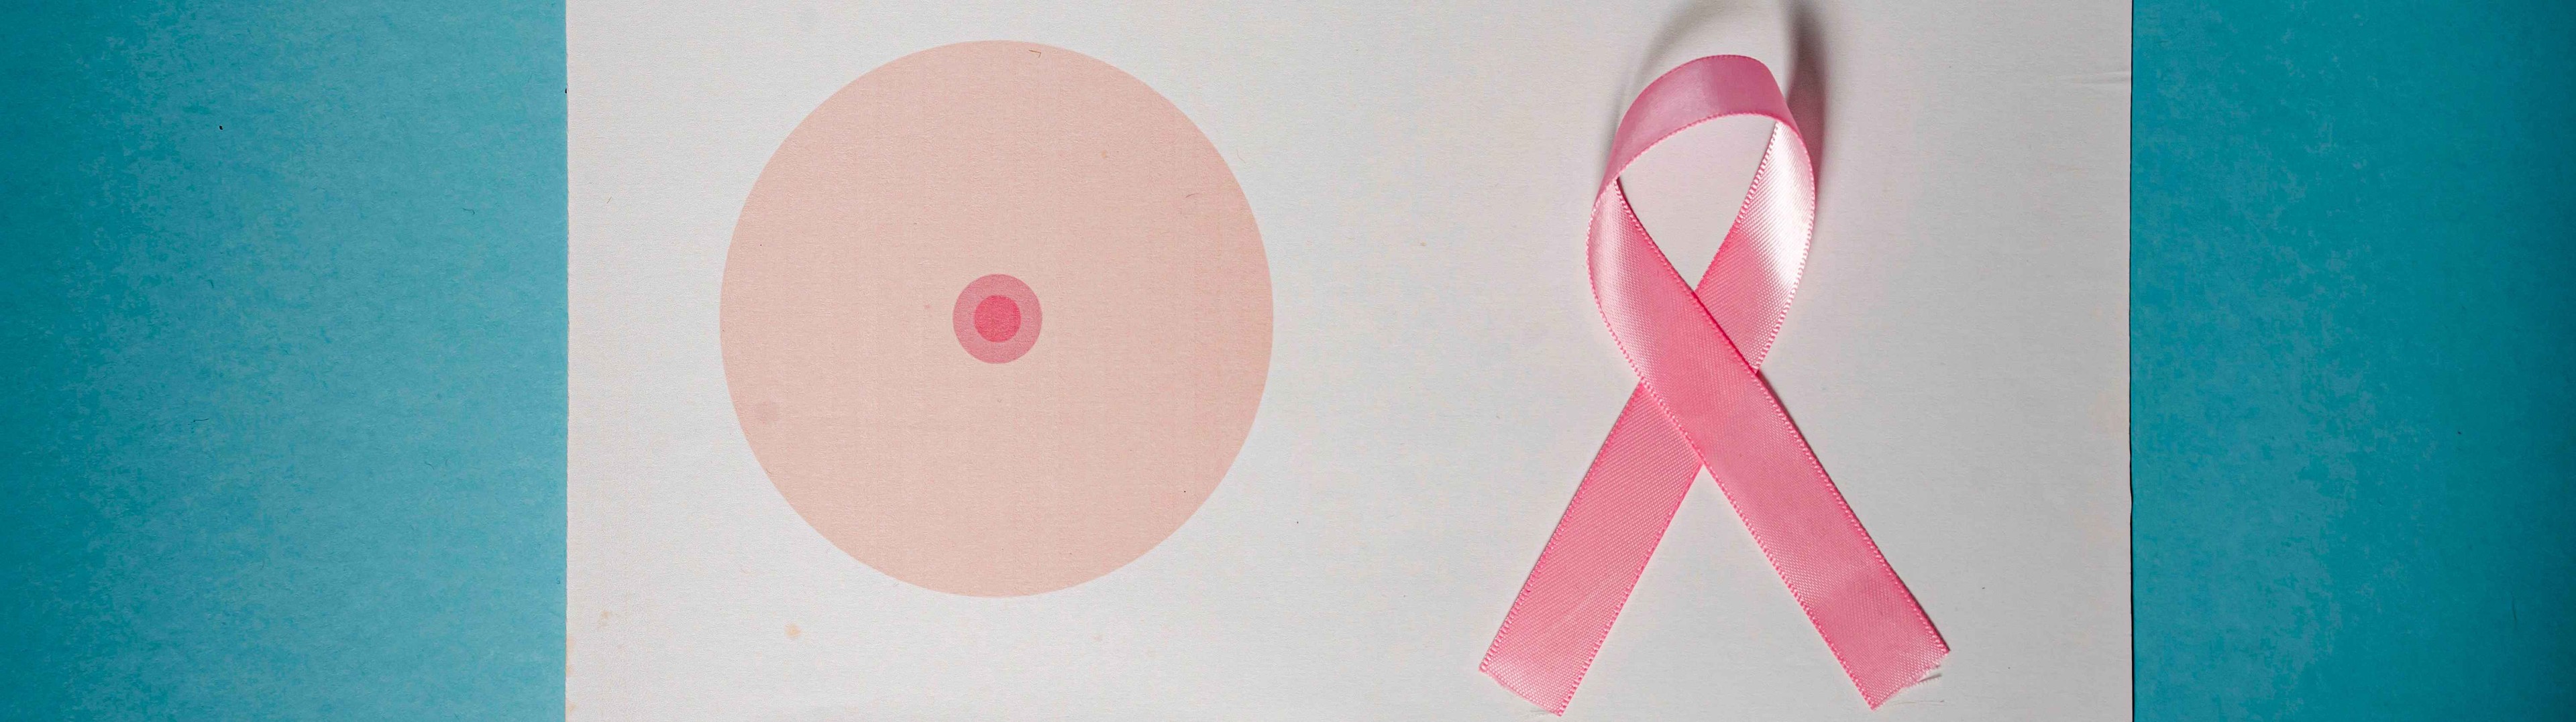 Técnica pionera para la reconstrucción del pezón en pacientes de cáncer de mama